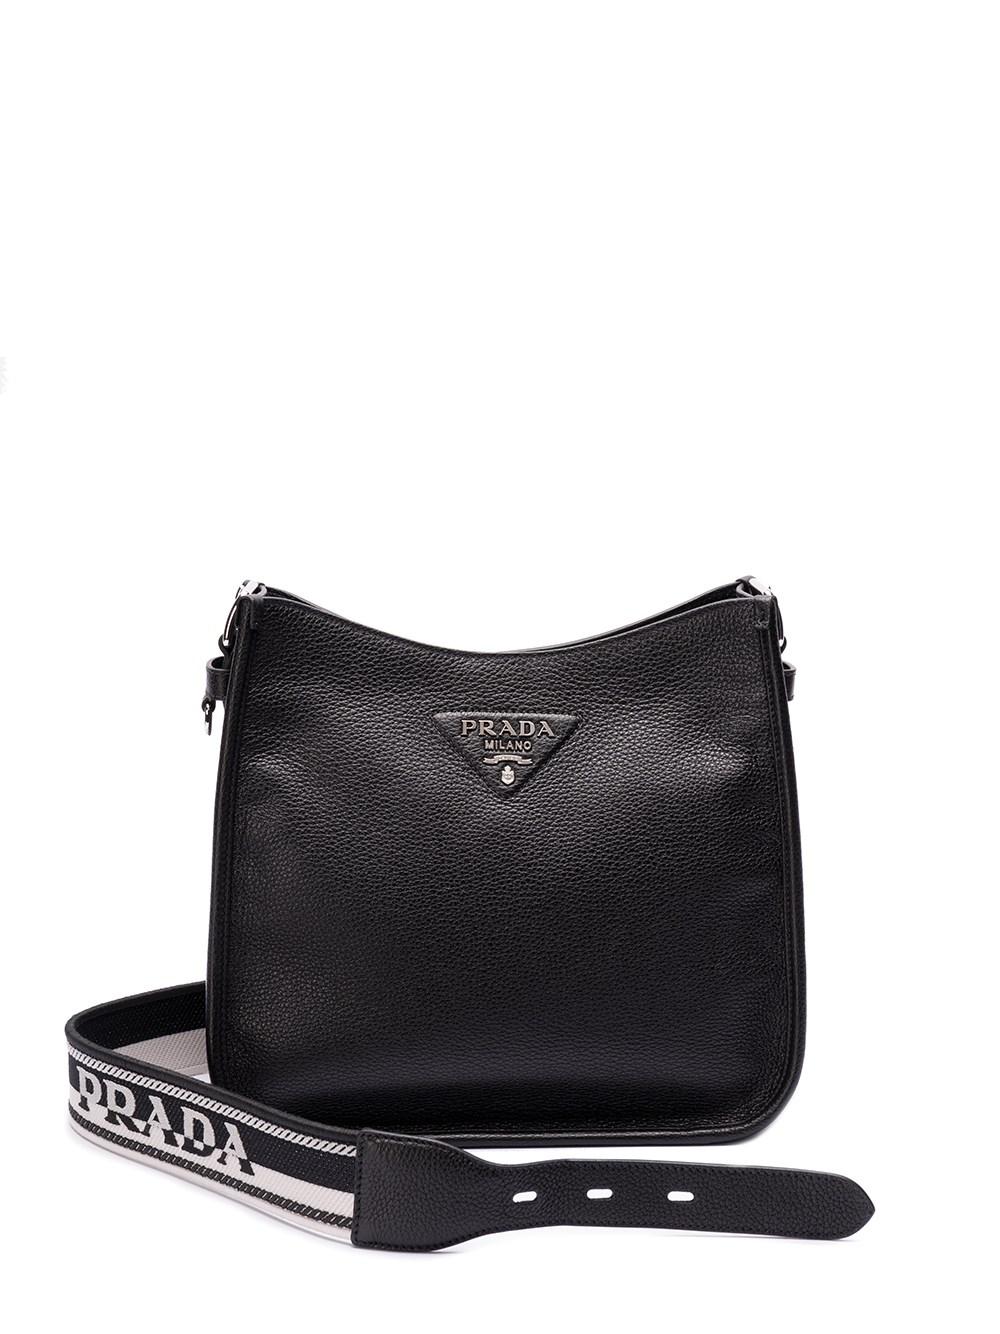 Prada Triangle-logo Hobo Shoulder Bag in Black | Lyst UK